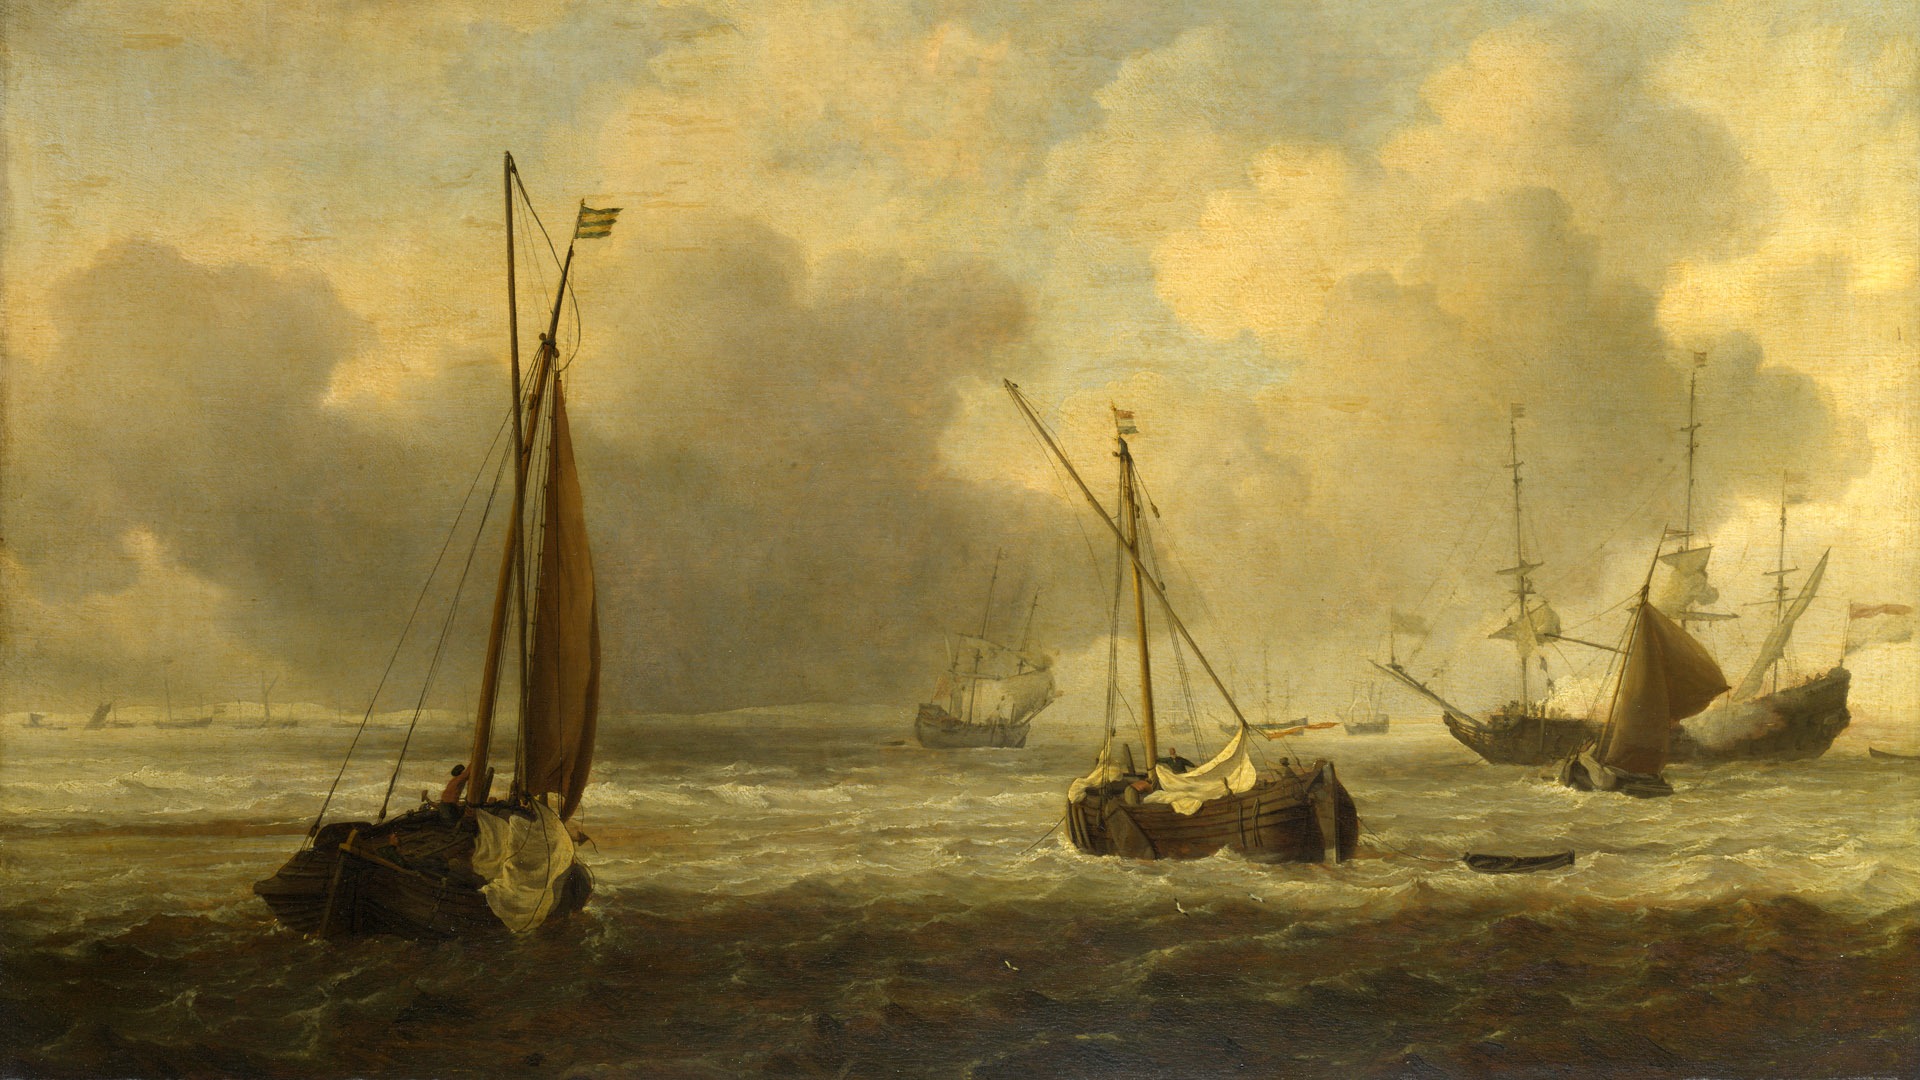 伦敦画廊帆船 壁纸(二)10 - 1920x1080